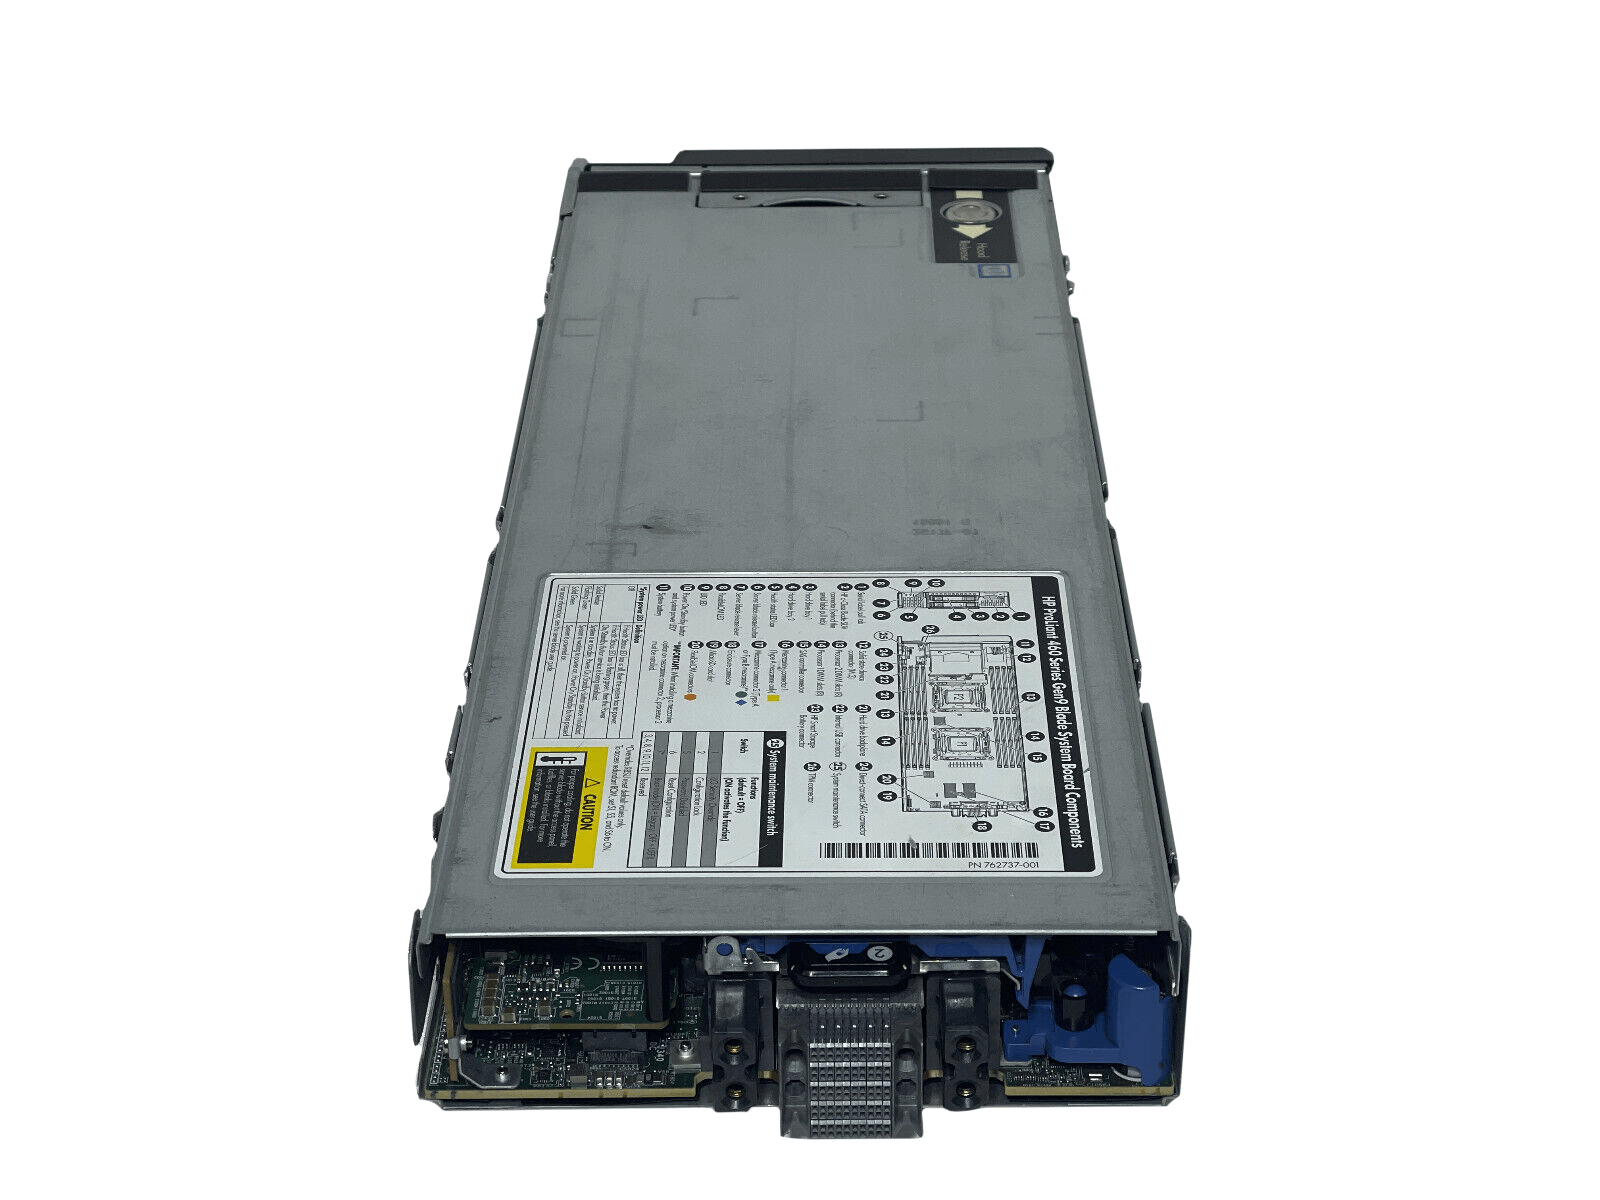 HPE BL460c Gen9 Blade Server 2SFF 2x 10C E5-2650 v3 256GB P244br 630FLB 10GbE.